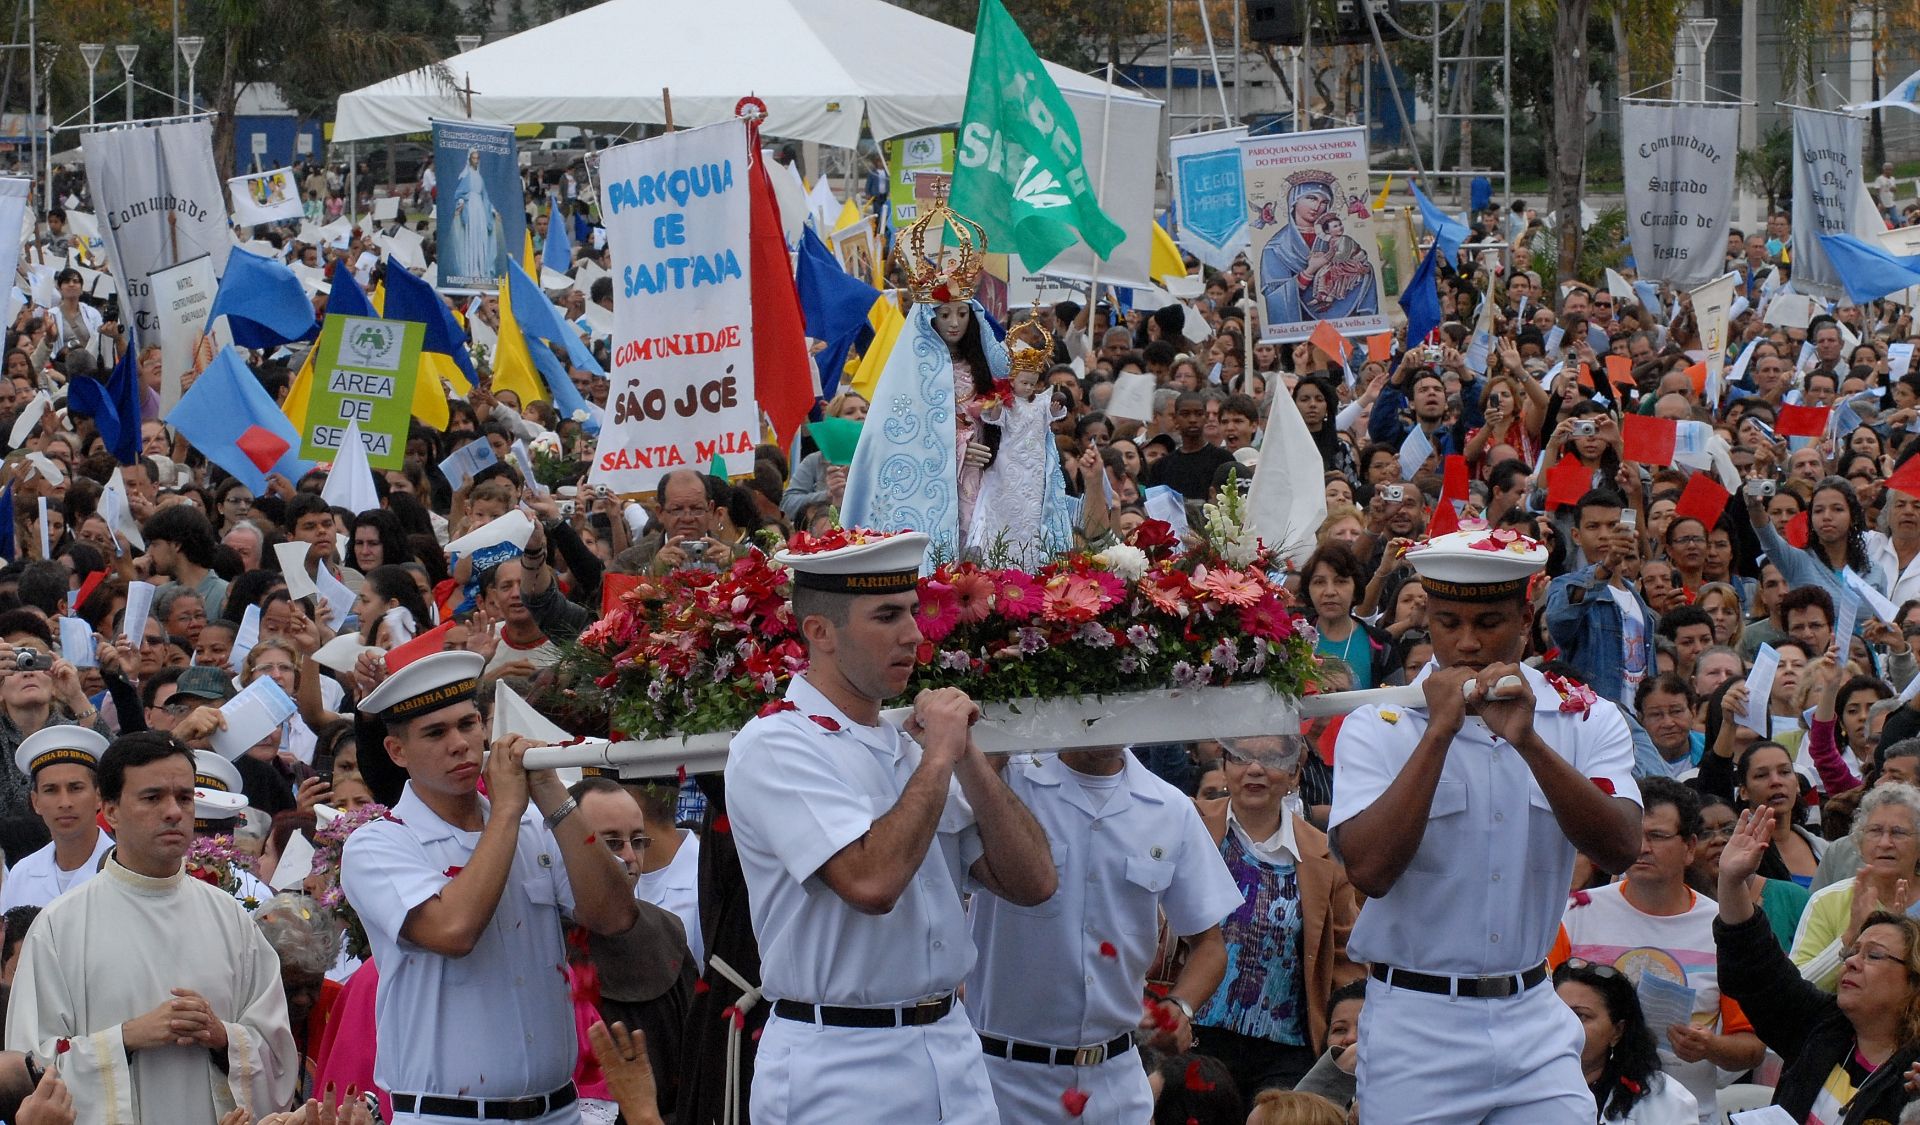 Data: 23/08/2009 - Imagem de Nossa Senhora da Penha, conduzida pelos marinheiros, I Sínodo Arquidiocesano da Arquidiocese de Vitória, na Praça do Papa 